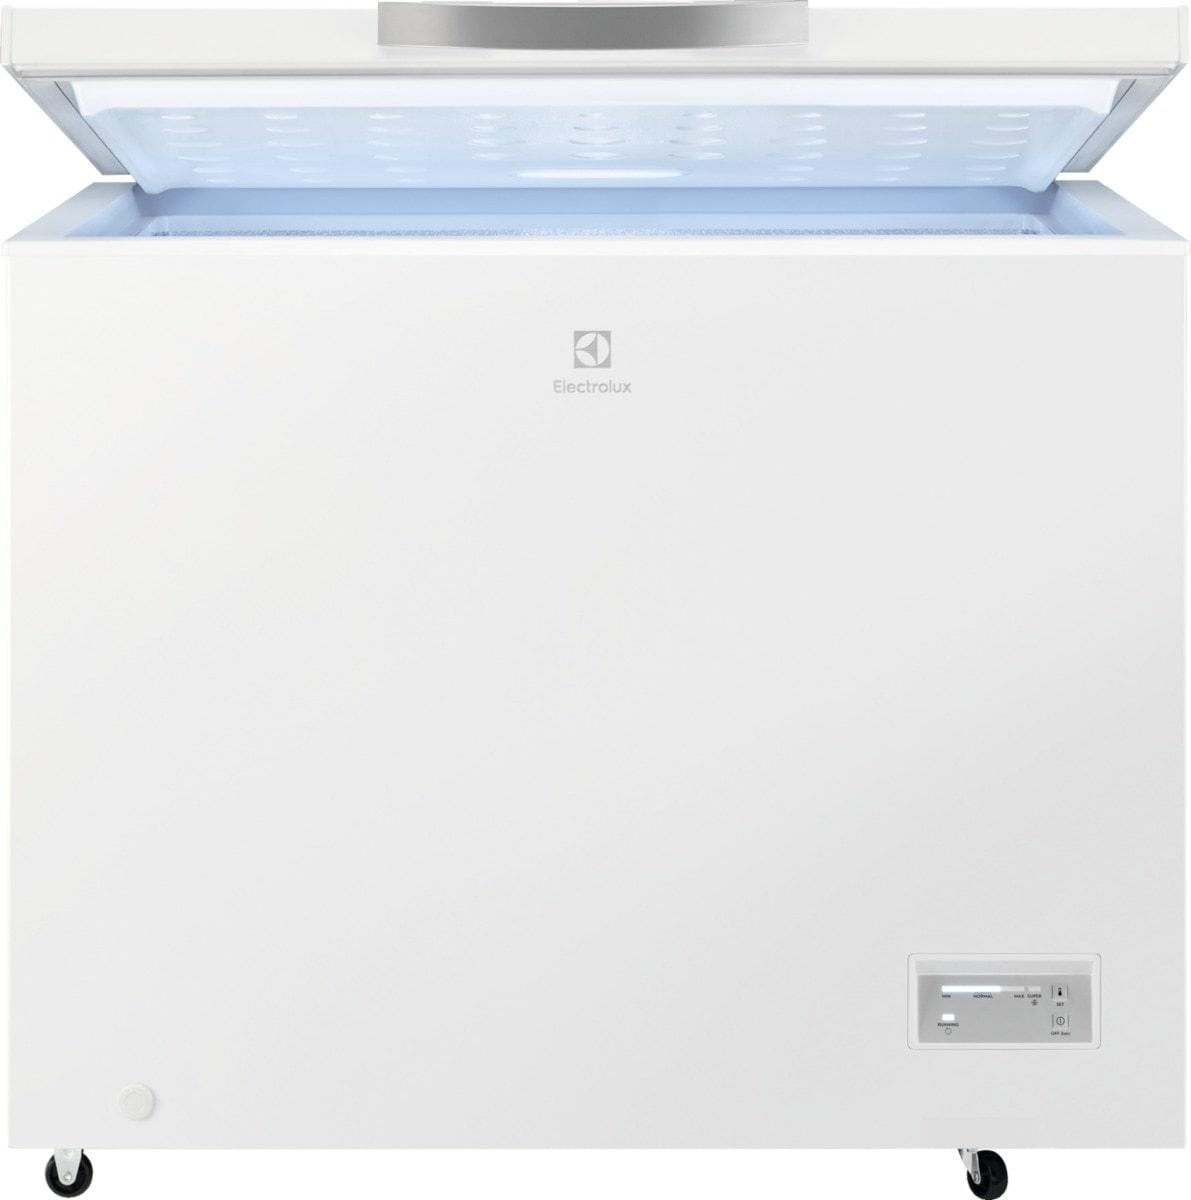 Electrolux kummefryser LCB3LF26W0 (hvid) - Køleskabe og frysere - Elgiganten